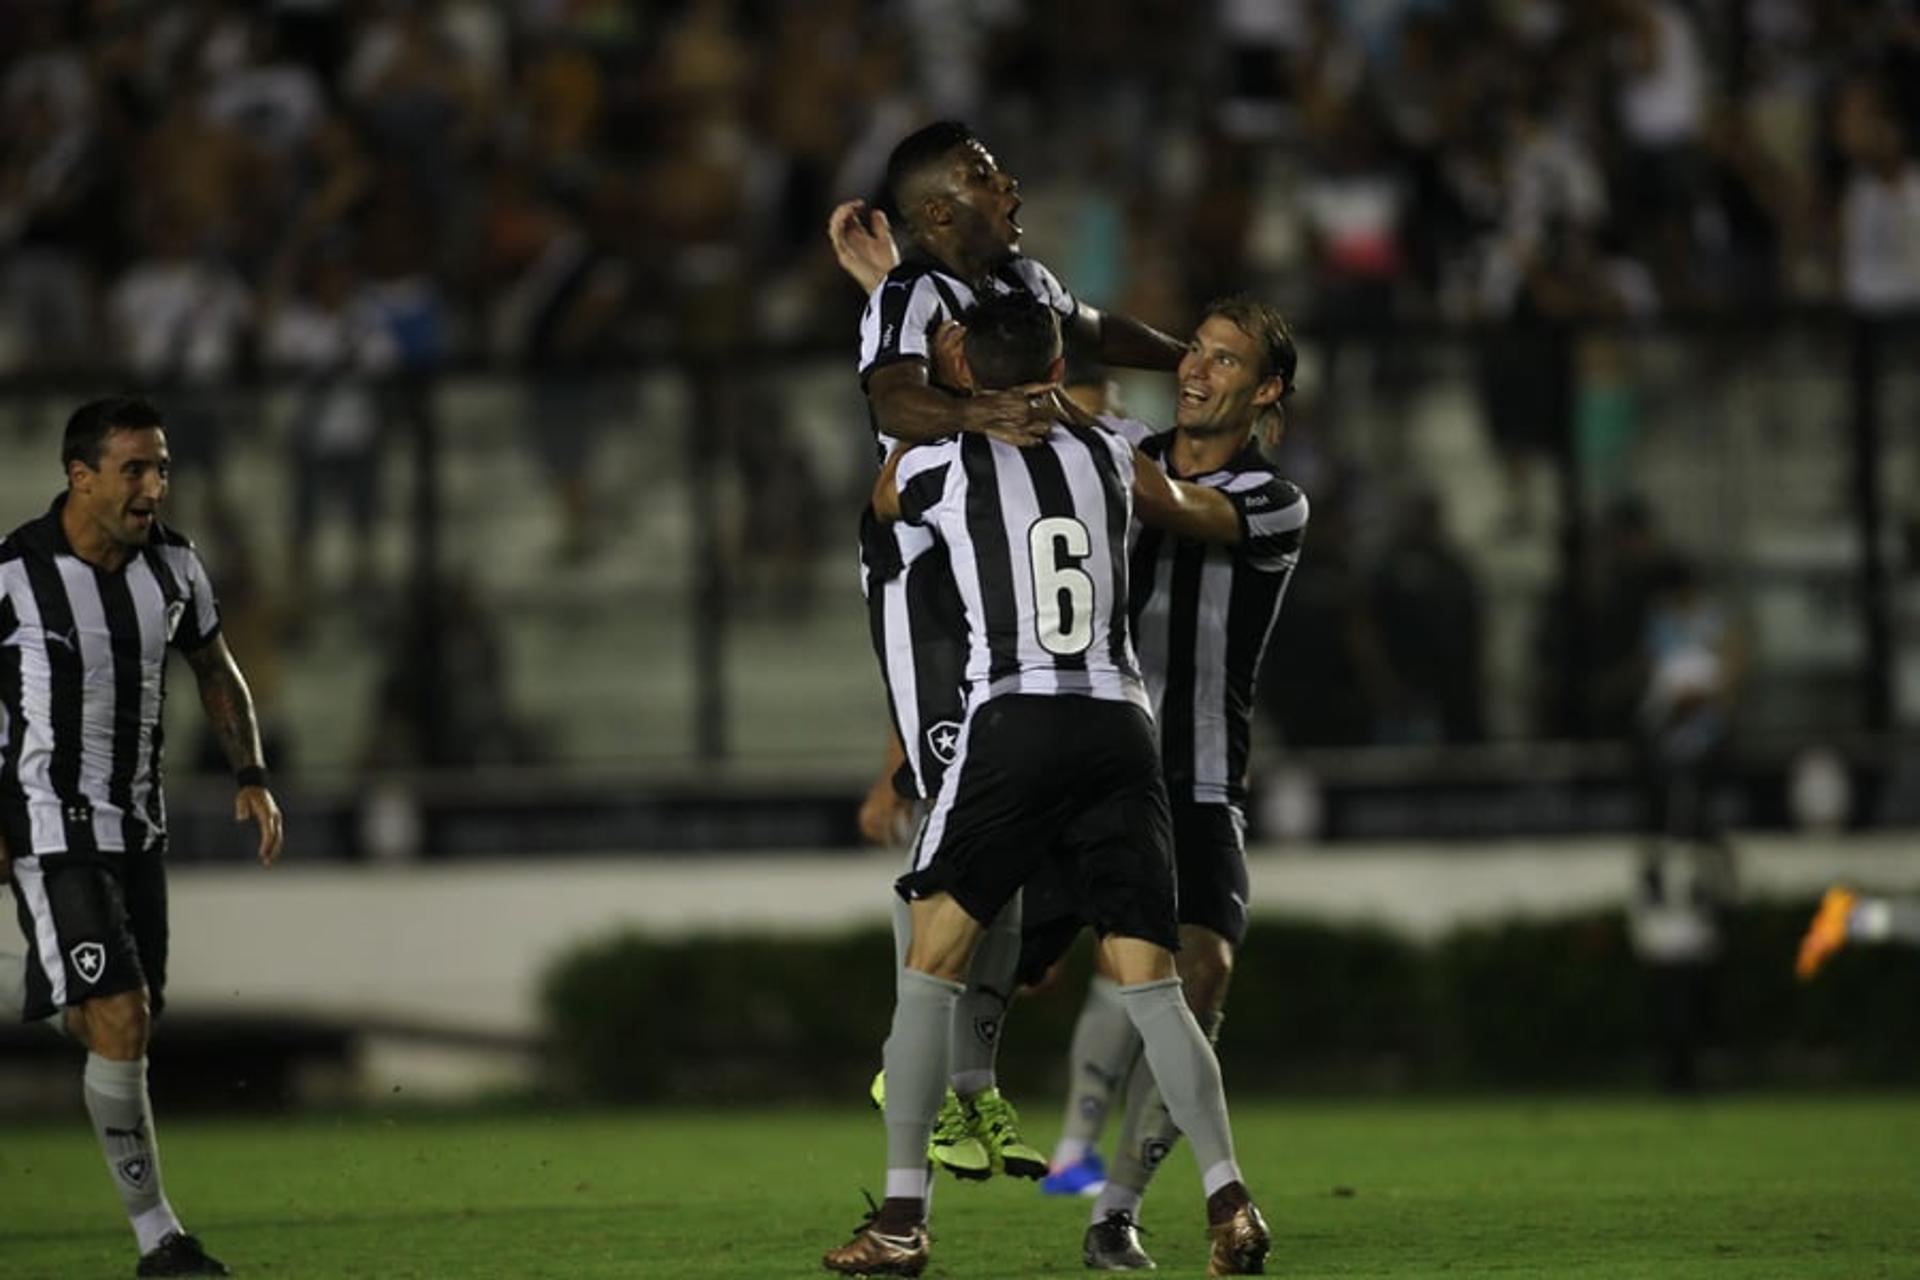 Campeonato Carioca - Vasco x Botafogo